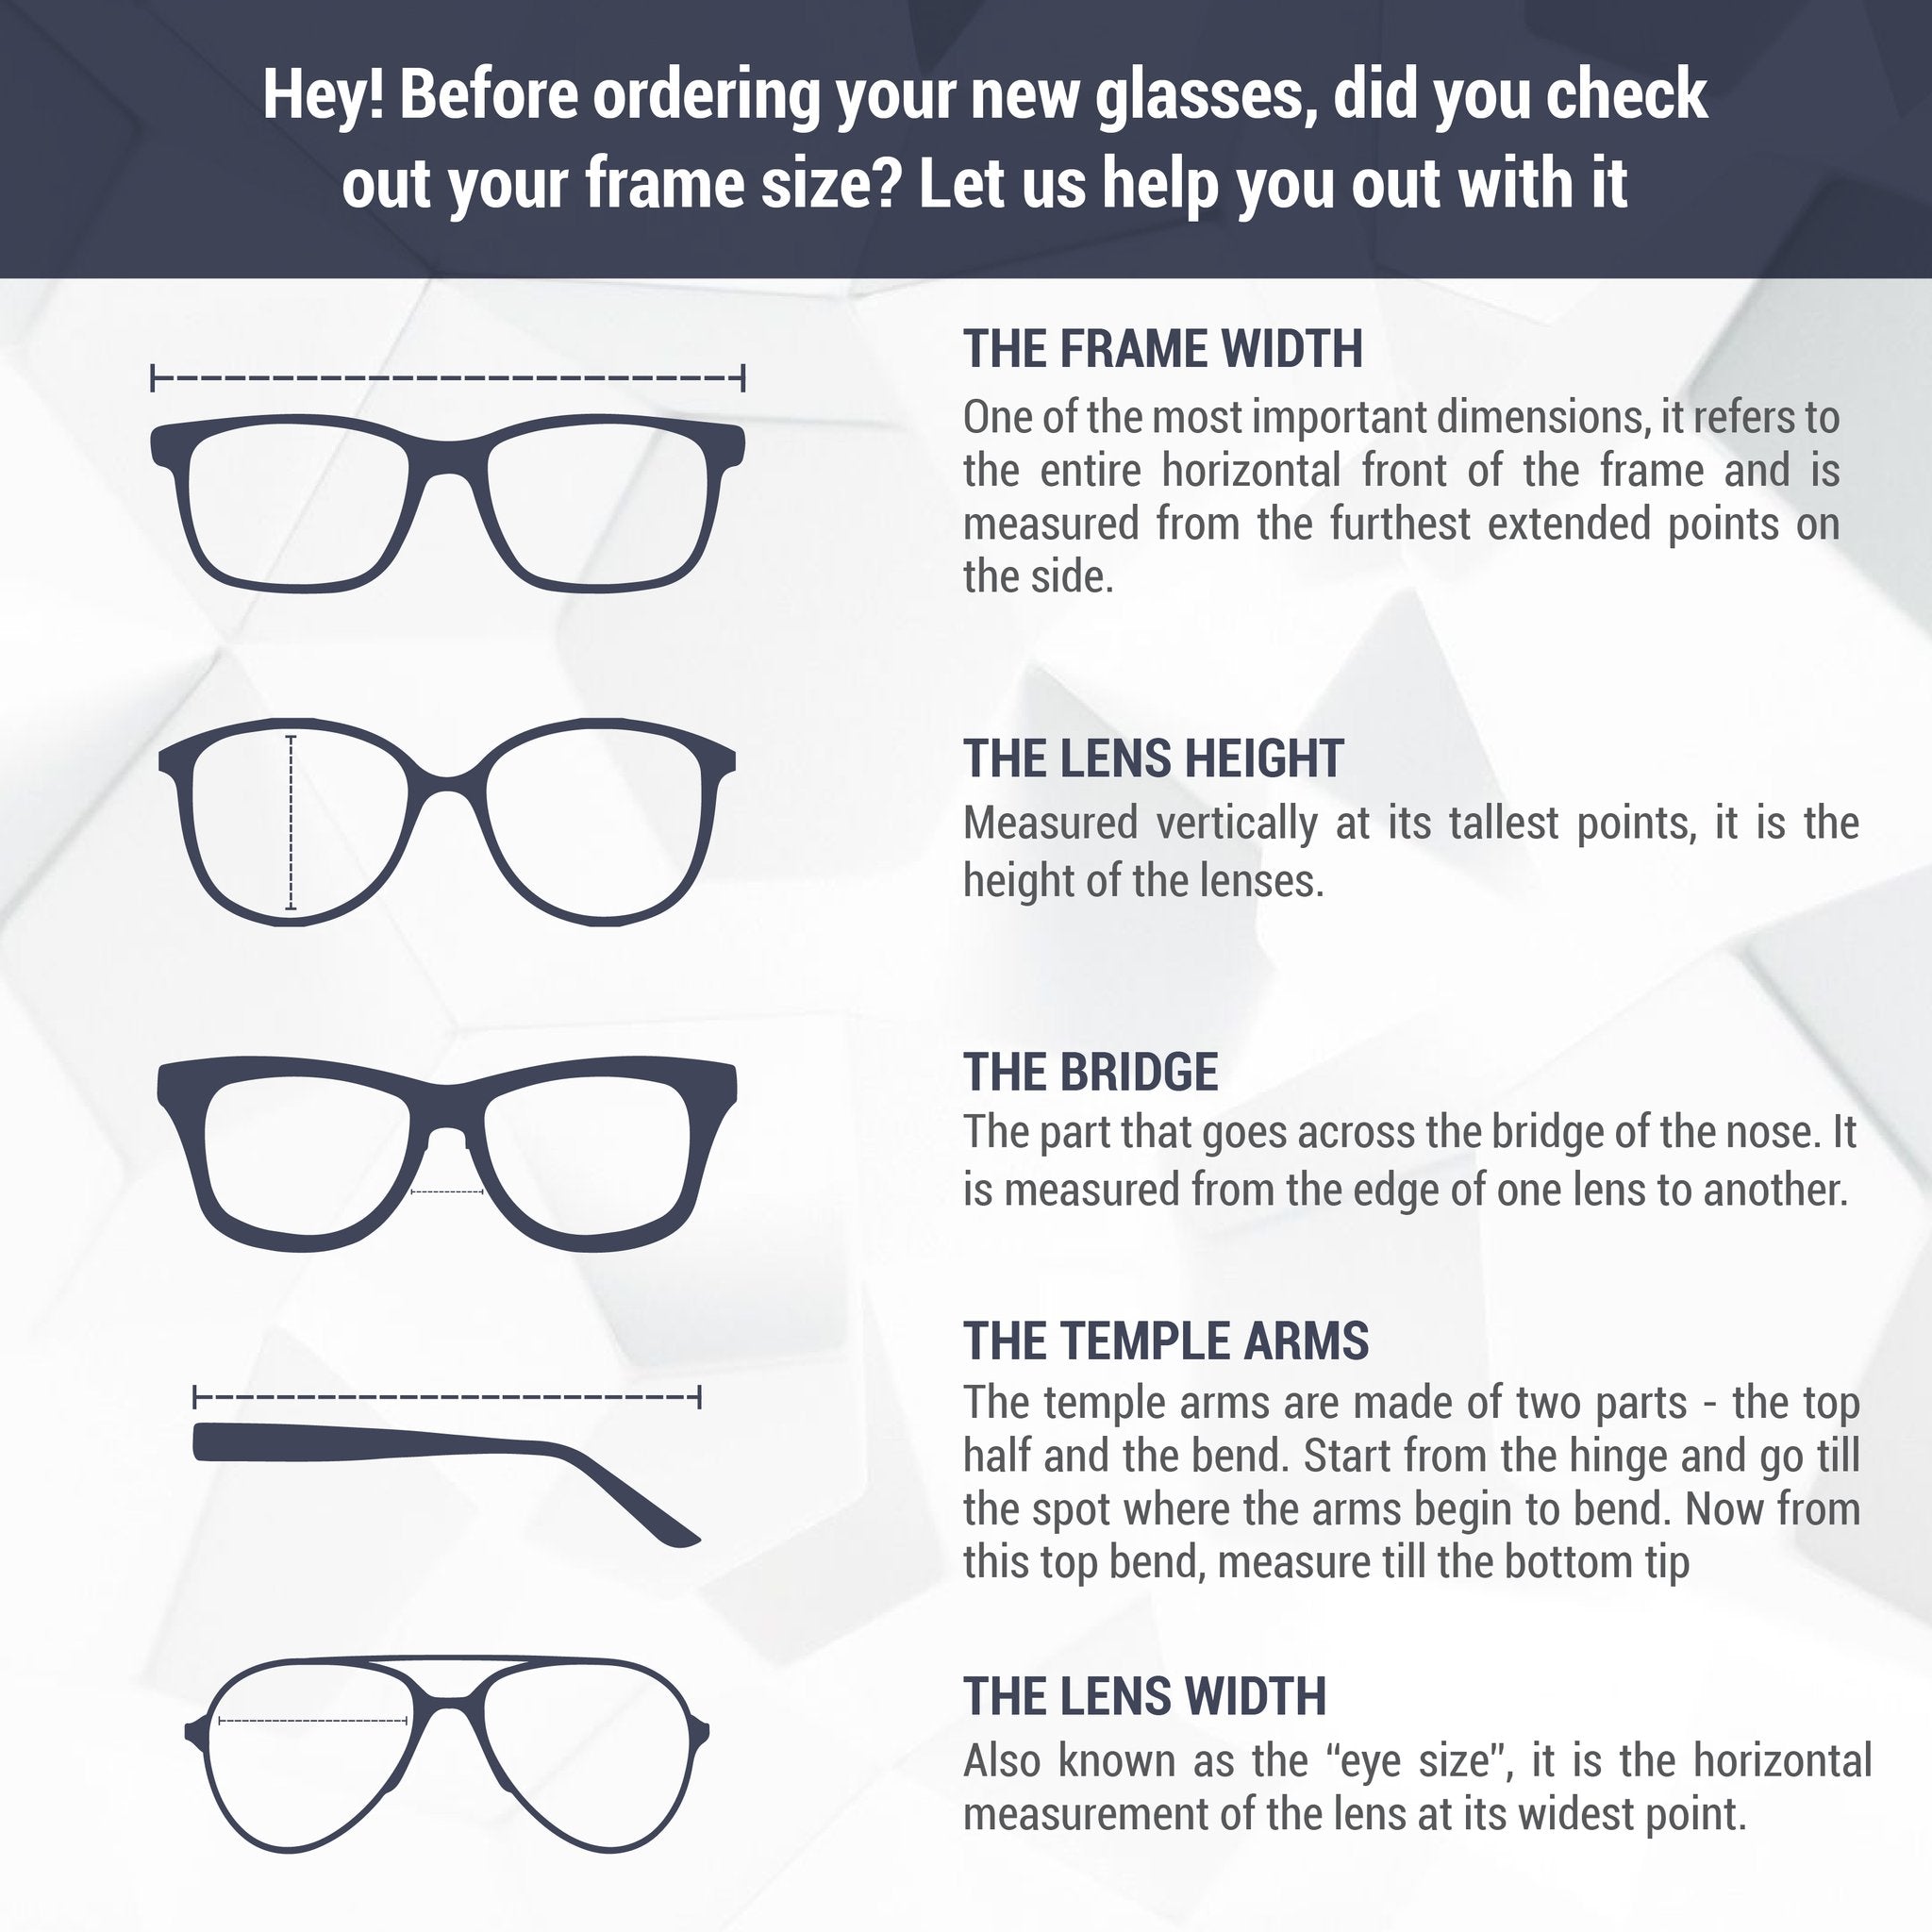 Monture de lunettes Carrera | Modèle 211 - Argent